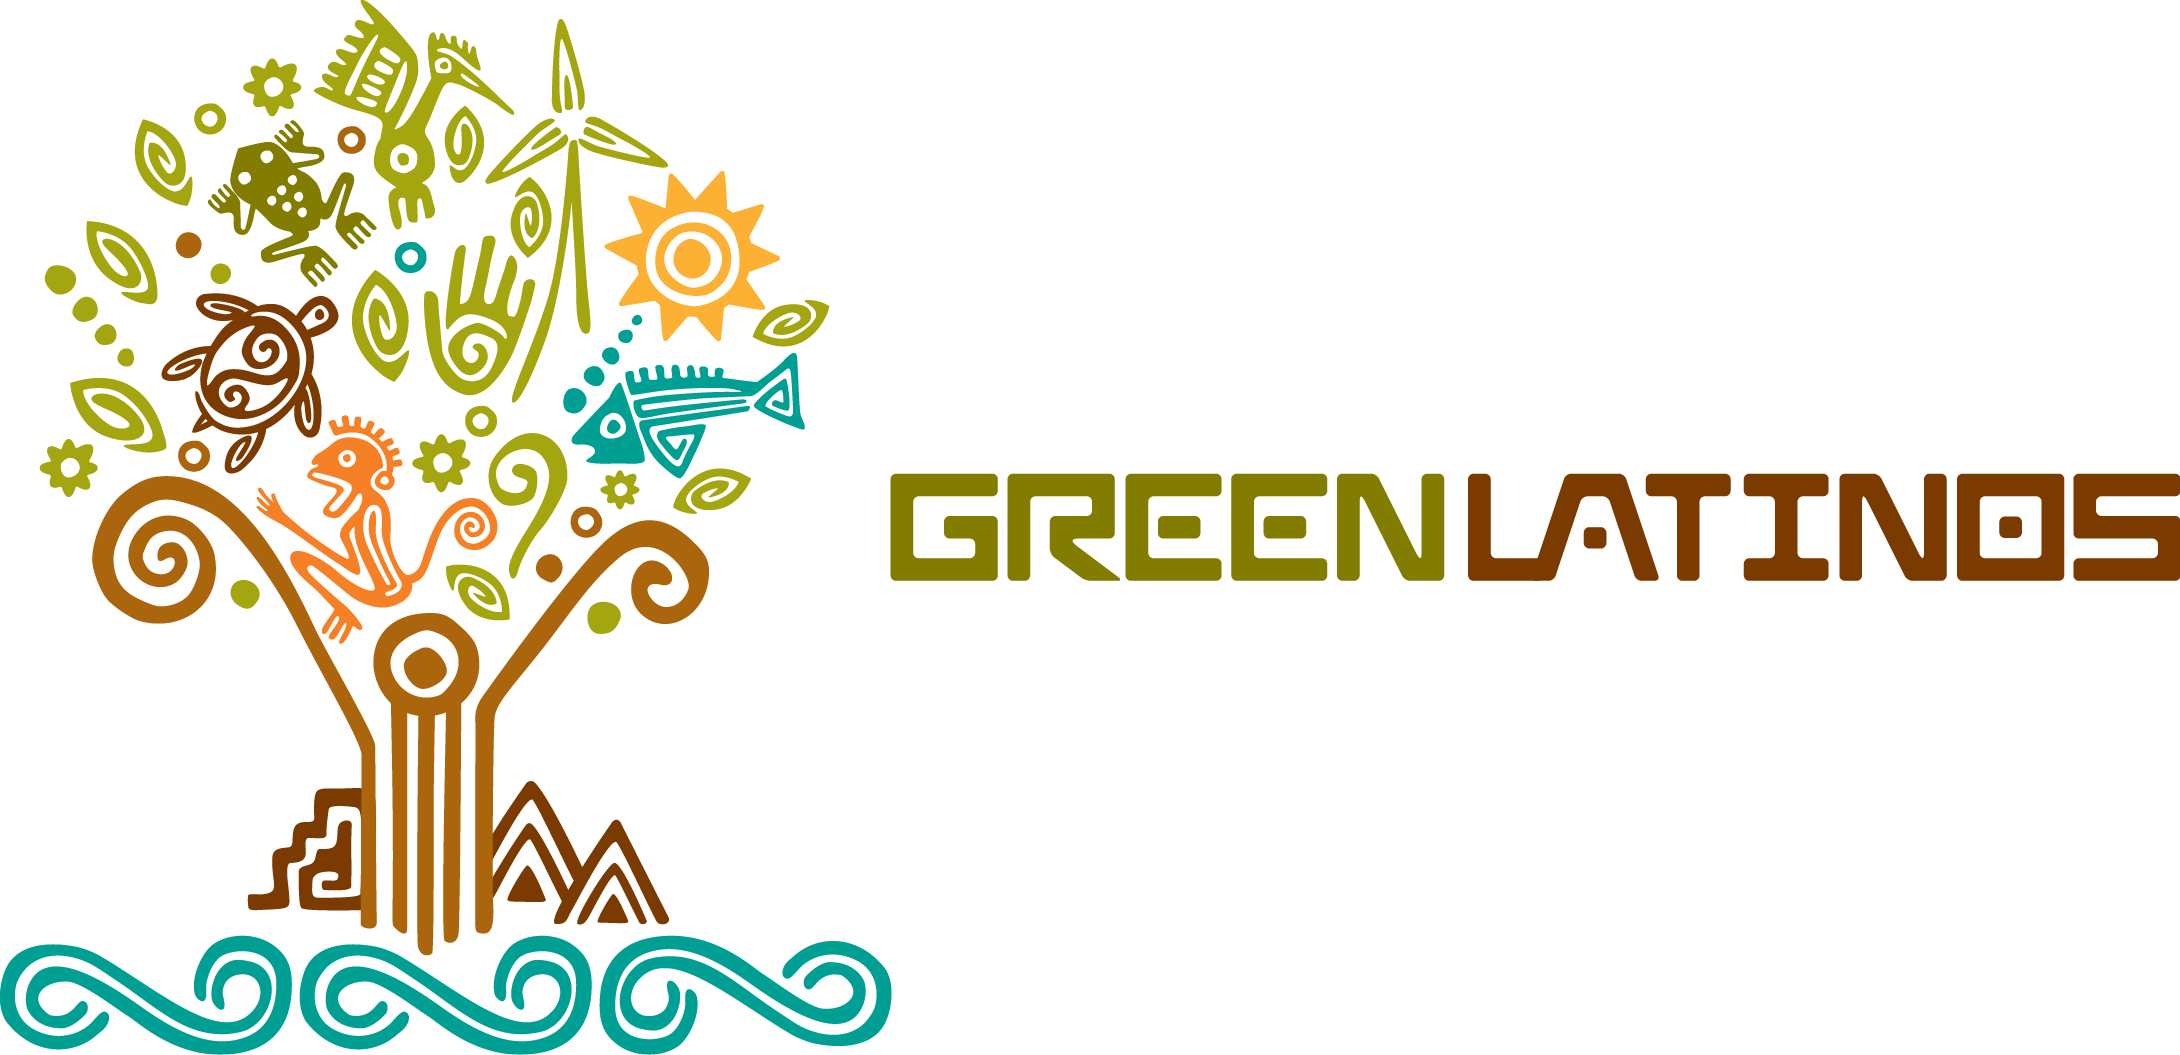 Green Latinos logo